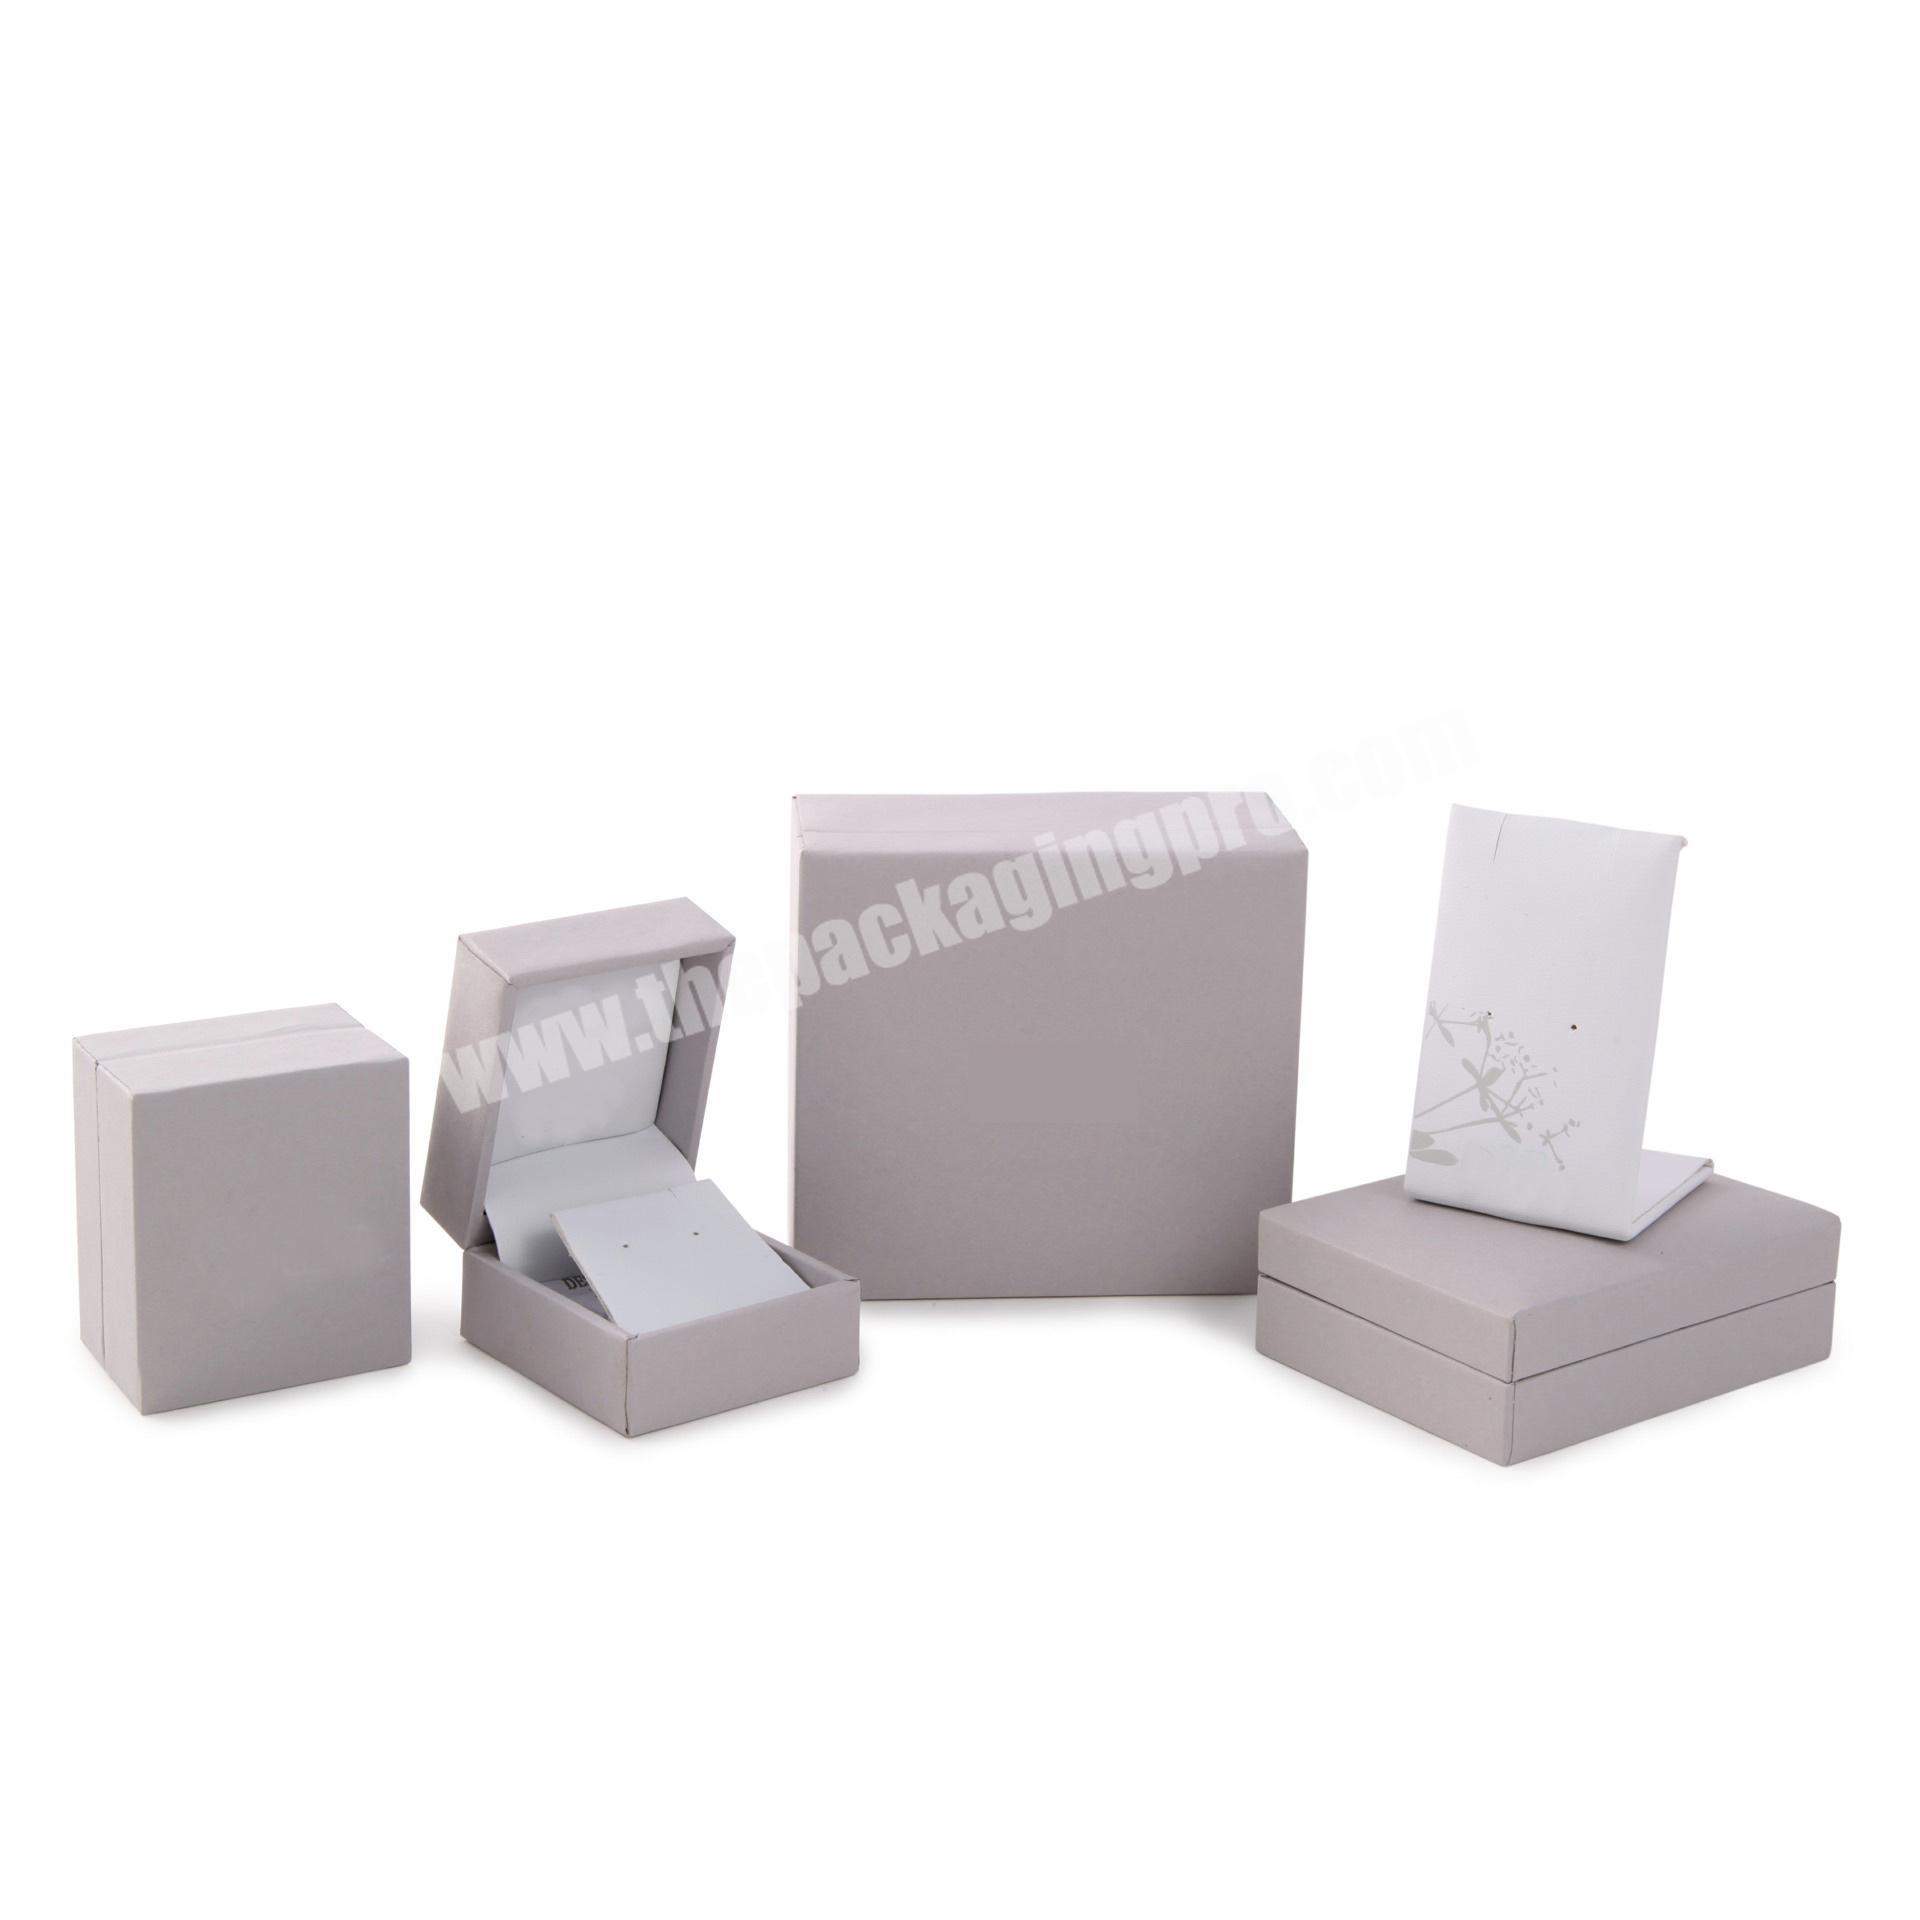 Elephant customized grey paper jewelry box